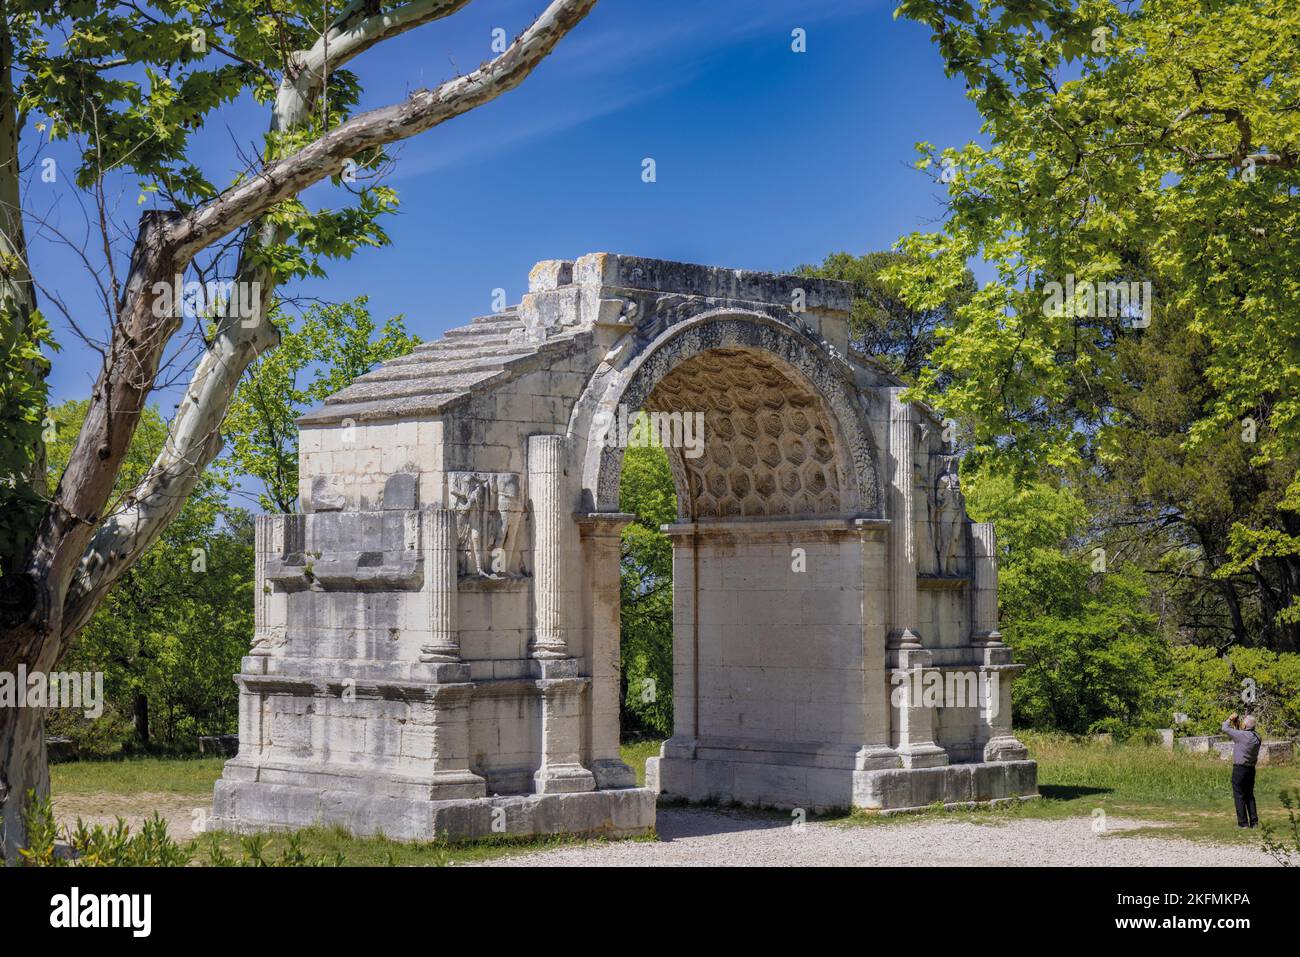 Saint-Rémy-de-Provence, Bouches-du-Rhône, Provence, Frankreich. Der Arc Municipal, ein Triumphbogen, der der Eingang zur römischen Stadt Glanum war. Stockfoto